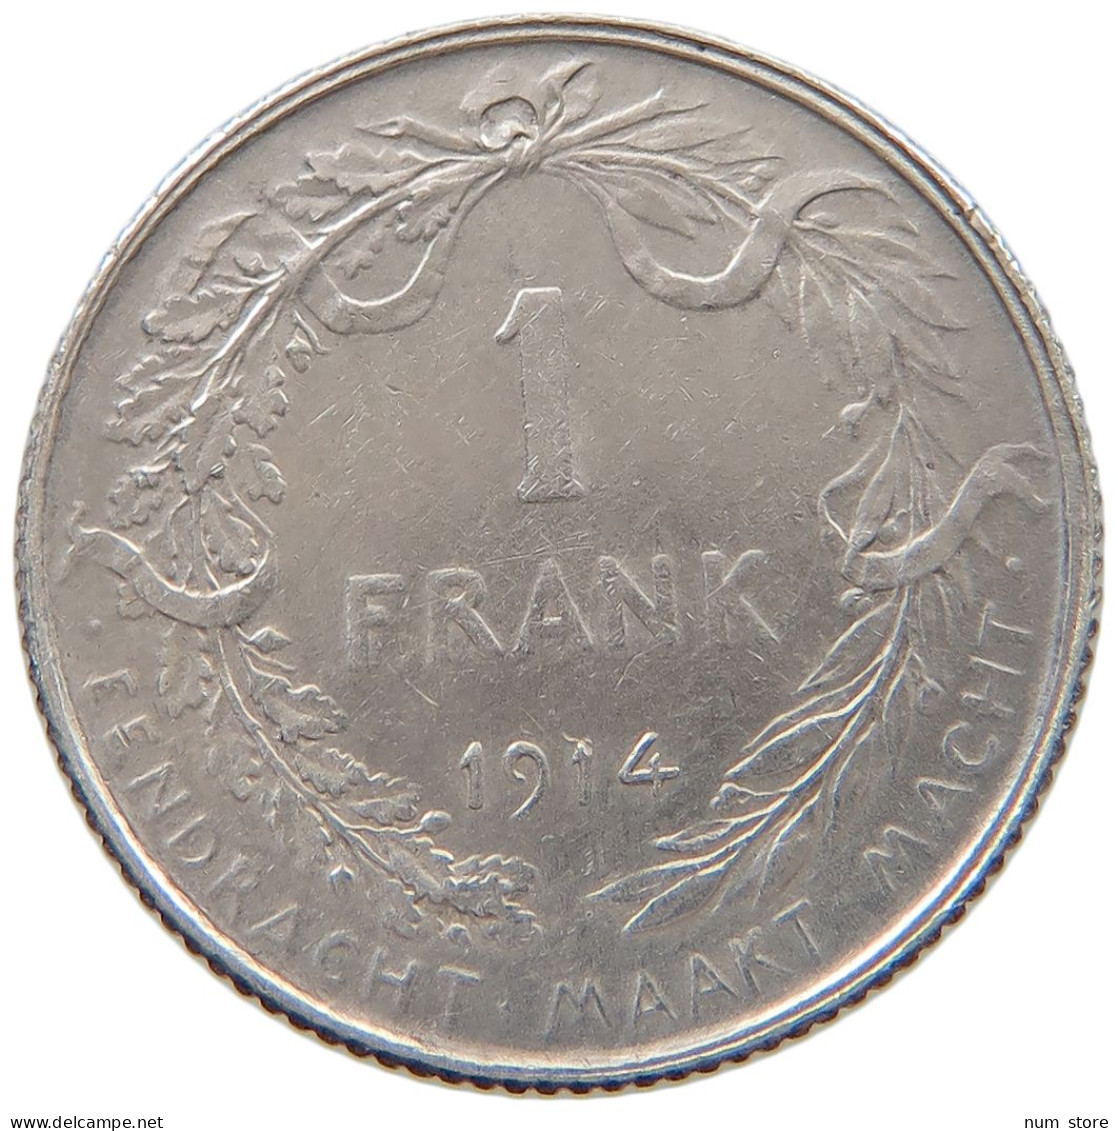 BELGIUM FRANC 1914 Albert I. 1909-1934 #a057 0405 - 1 Frank